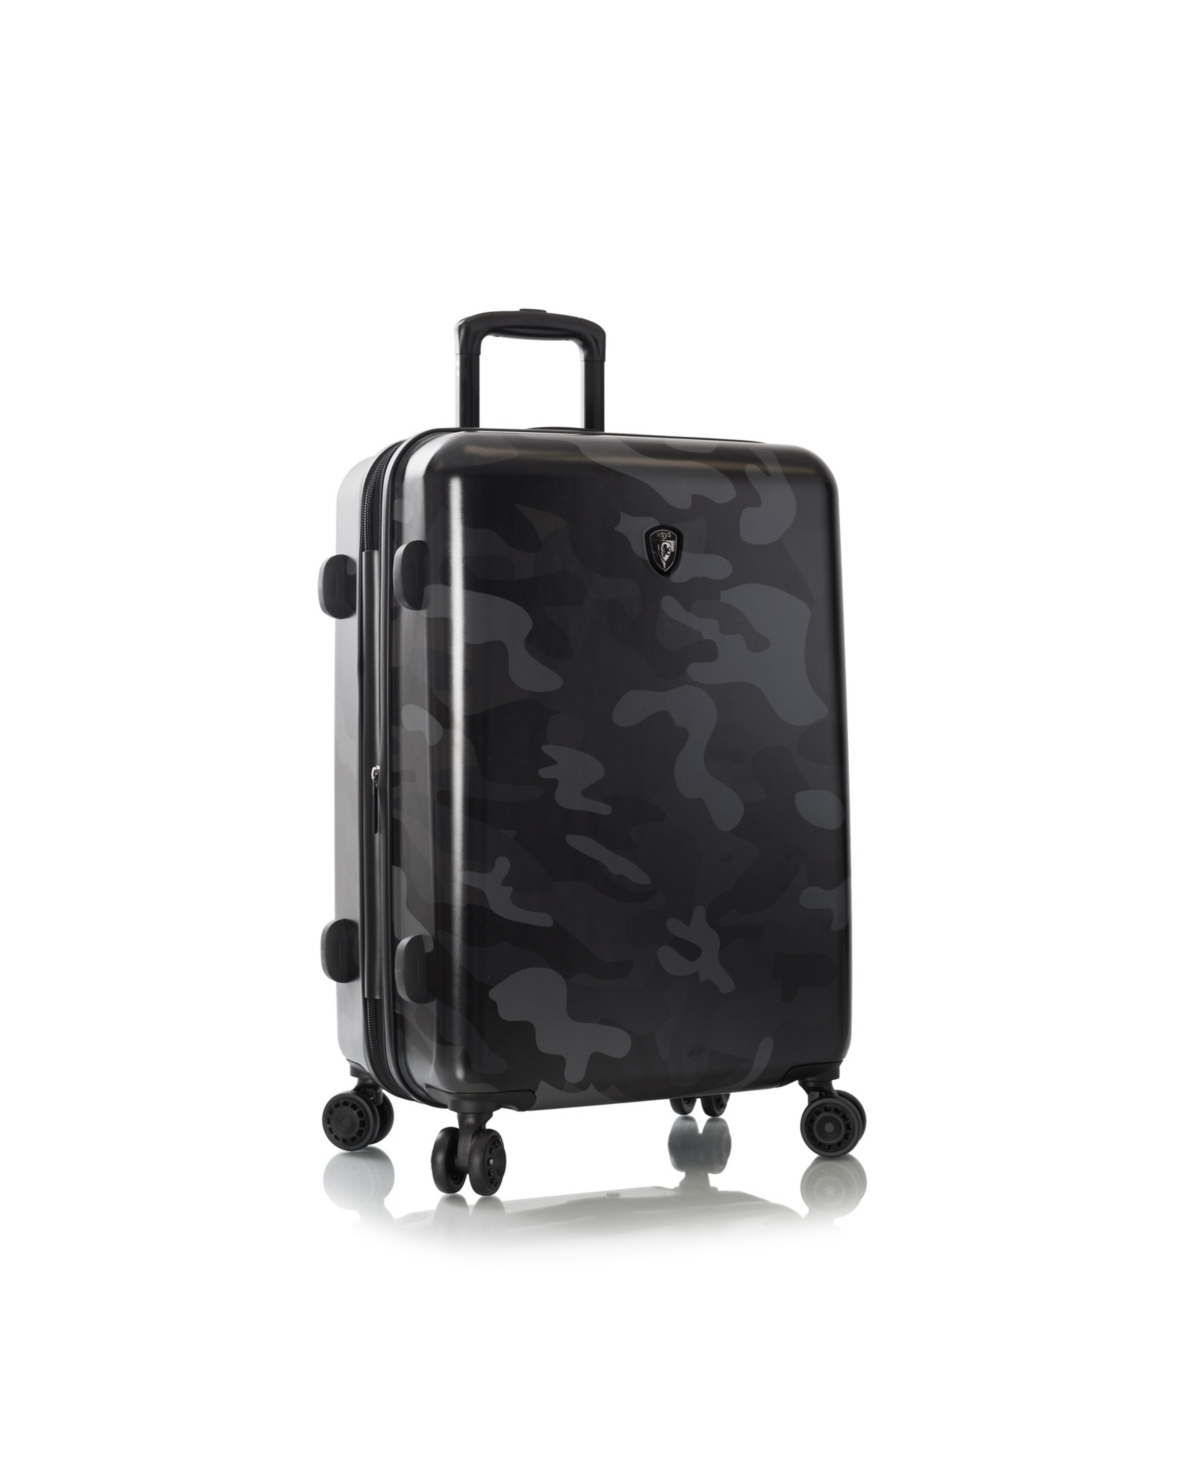 Fashion 26" Hardside Spinner Luggage - White Camo